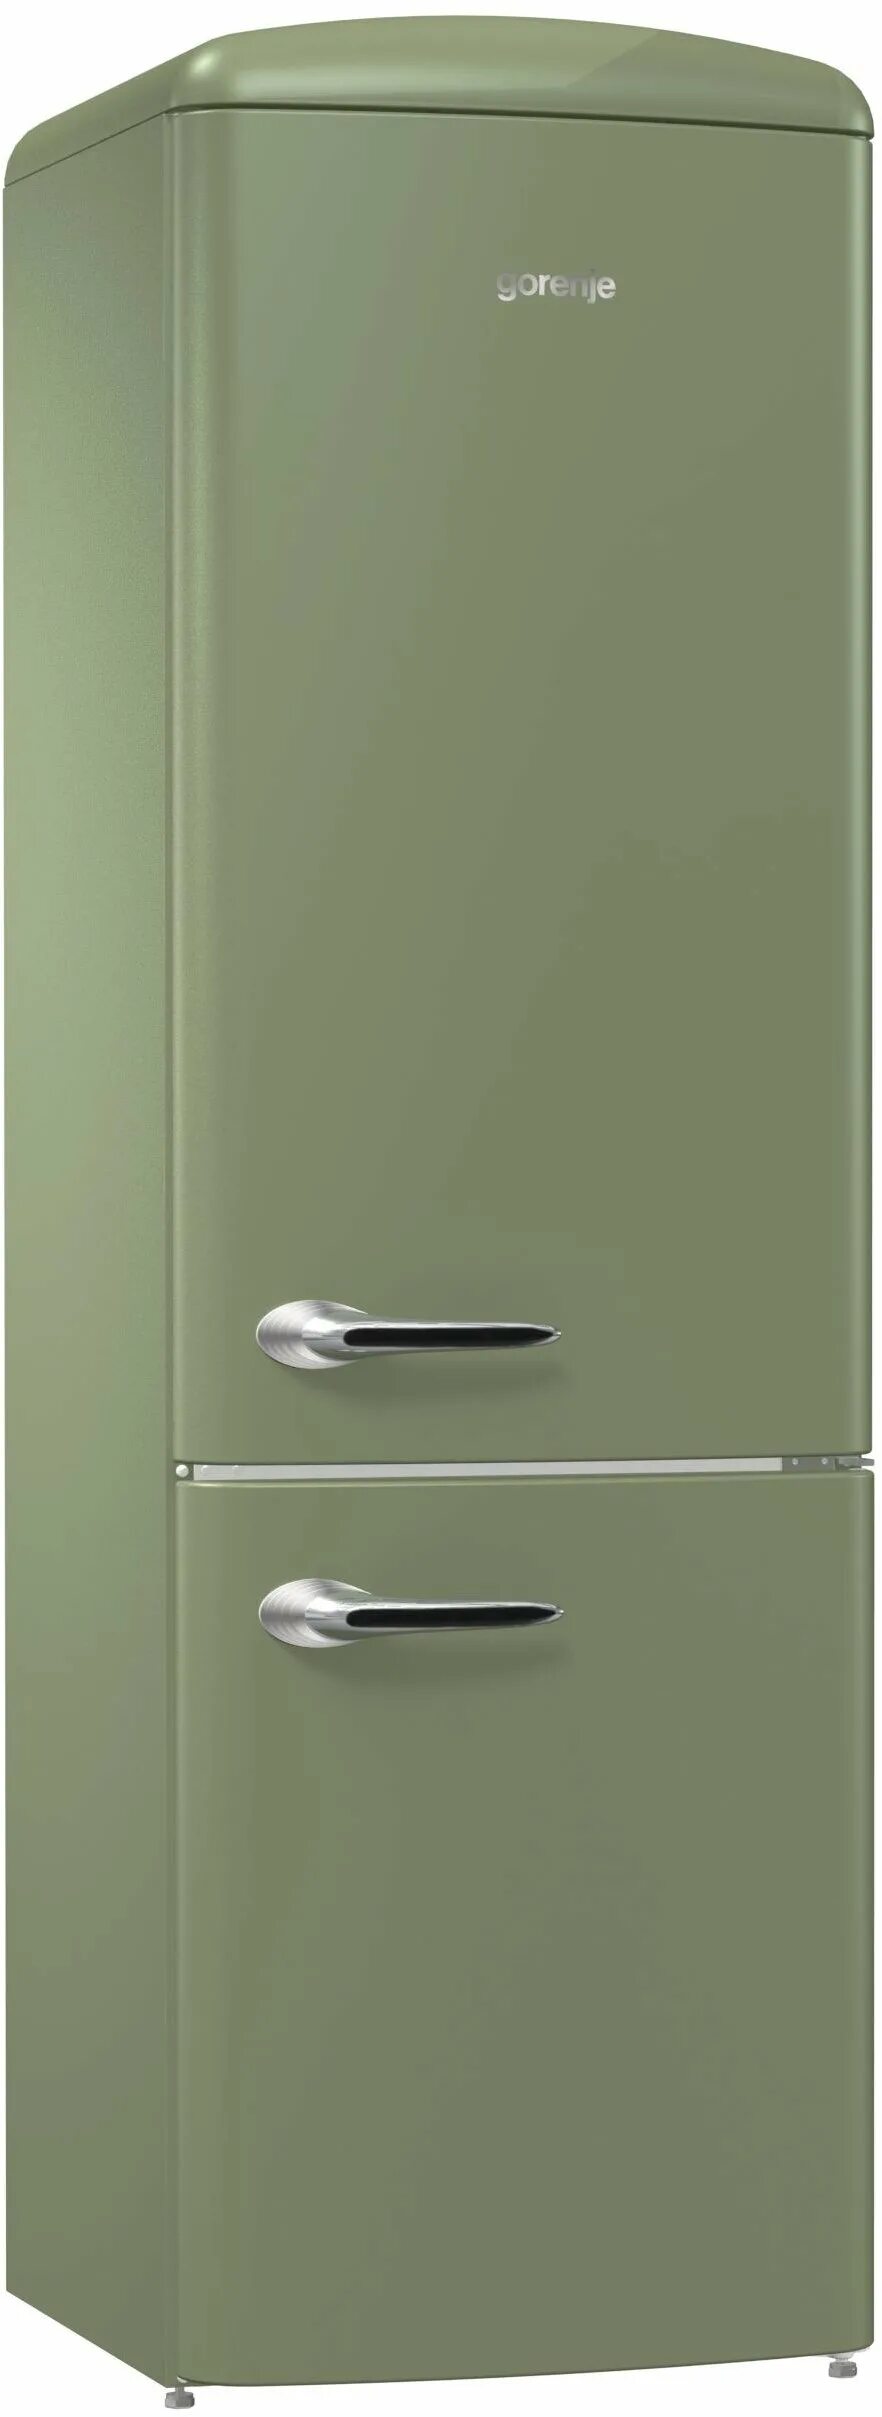 Двухкамерный холодильник Gorenje ork192ol. Холодильник Gorenje Ork 192 ol. Холодильник Gorenje Ork 192 Ch. Холодильник Gorenje Ork 192 r, красный.